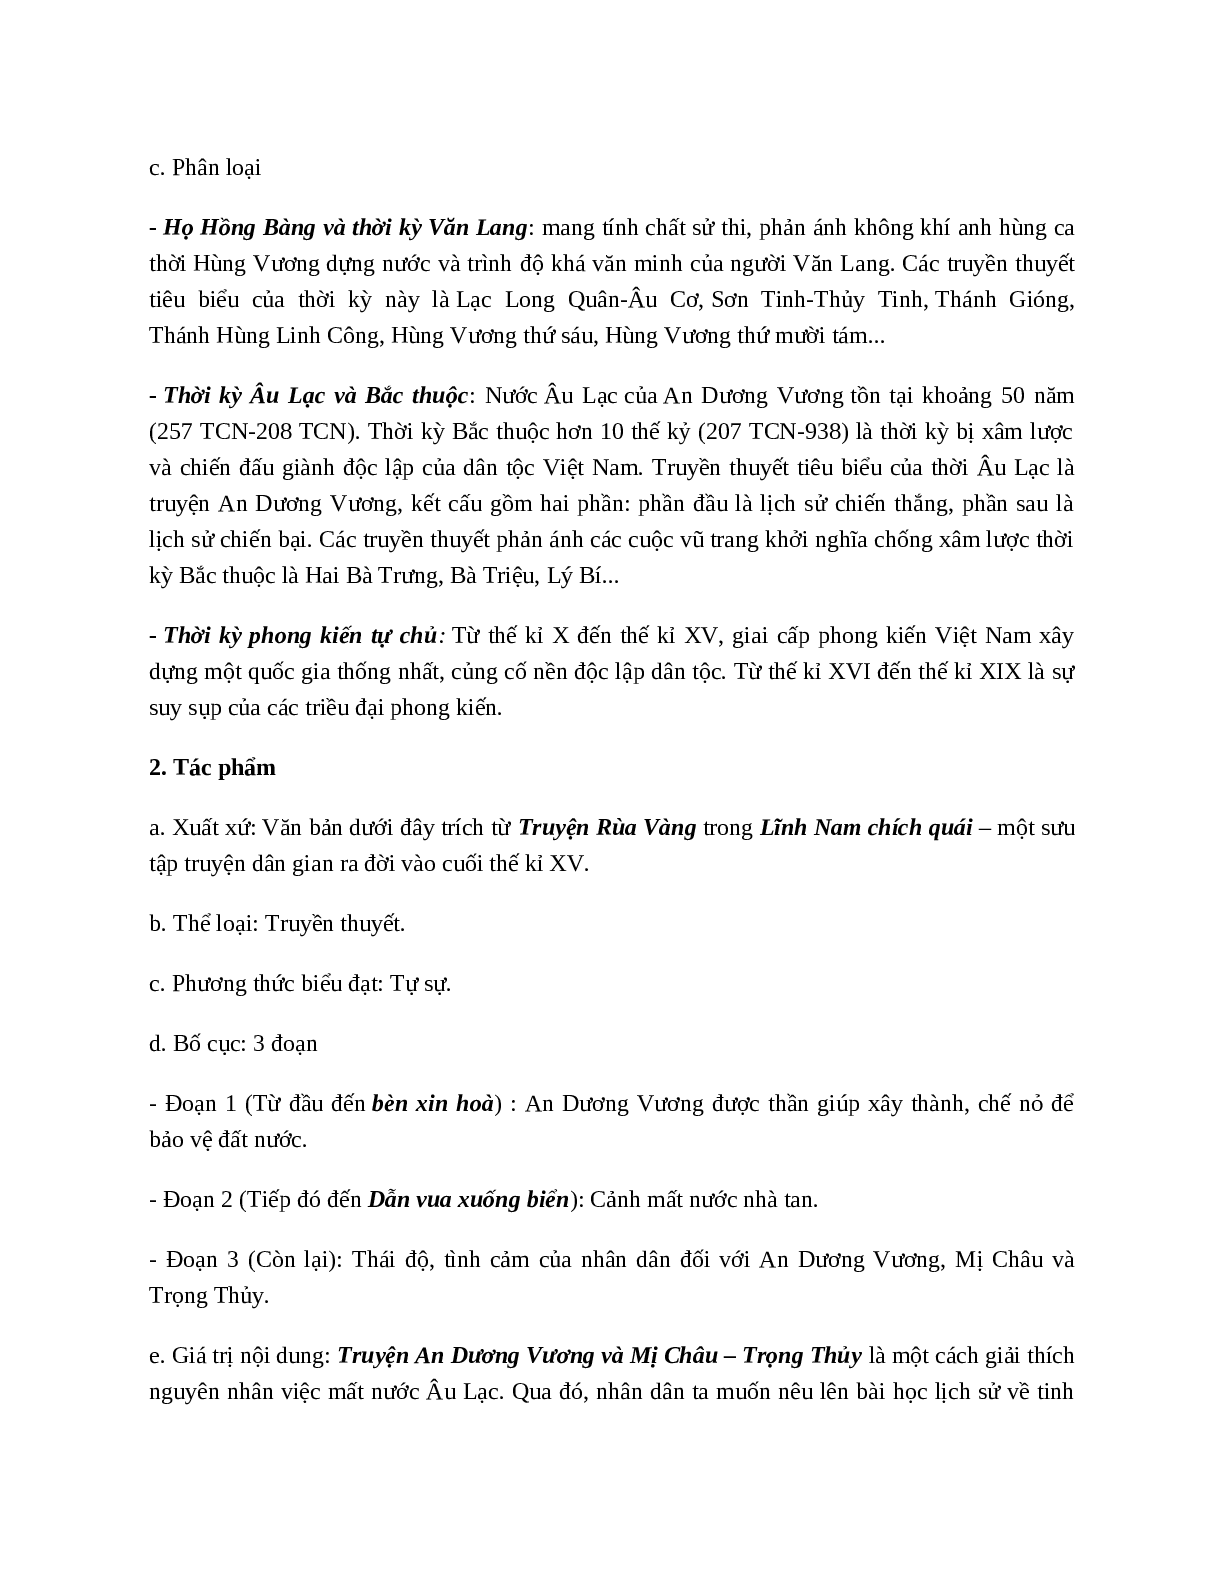 Truyện An Dương Vương và Mị Châu - Trọng Thủy - Tác giả tác phẩm - Ngữ văn lớp 10 (trang 2)